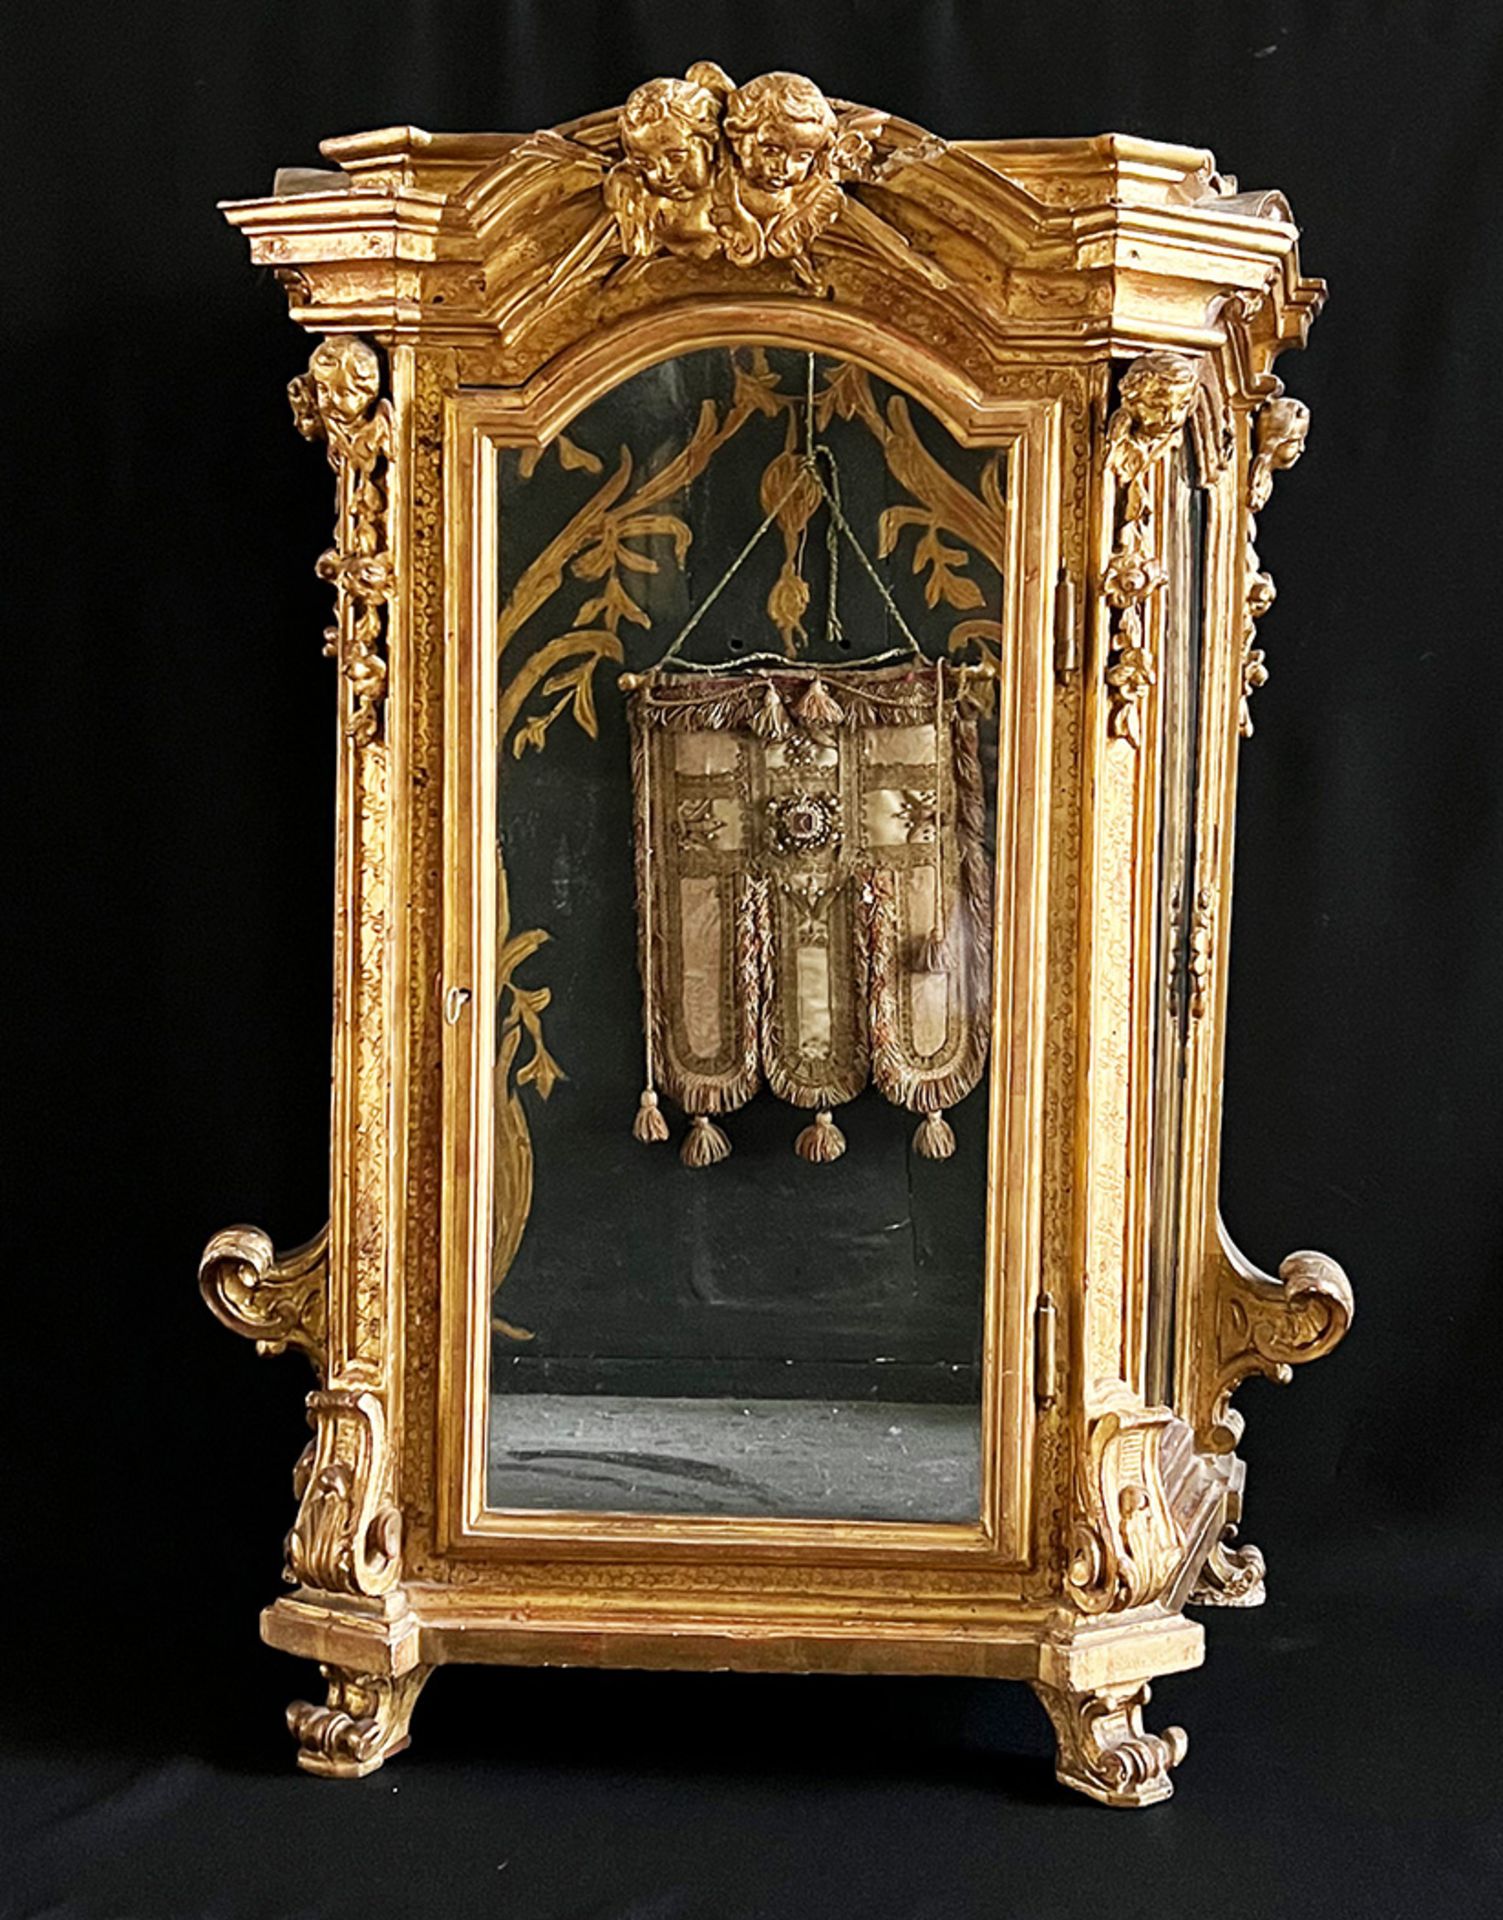 Barocker Schrein, dreiseitig verglast, Holz, vergoldet, mit Engel / Putten und Ornamentik, oben